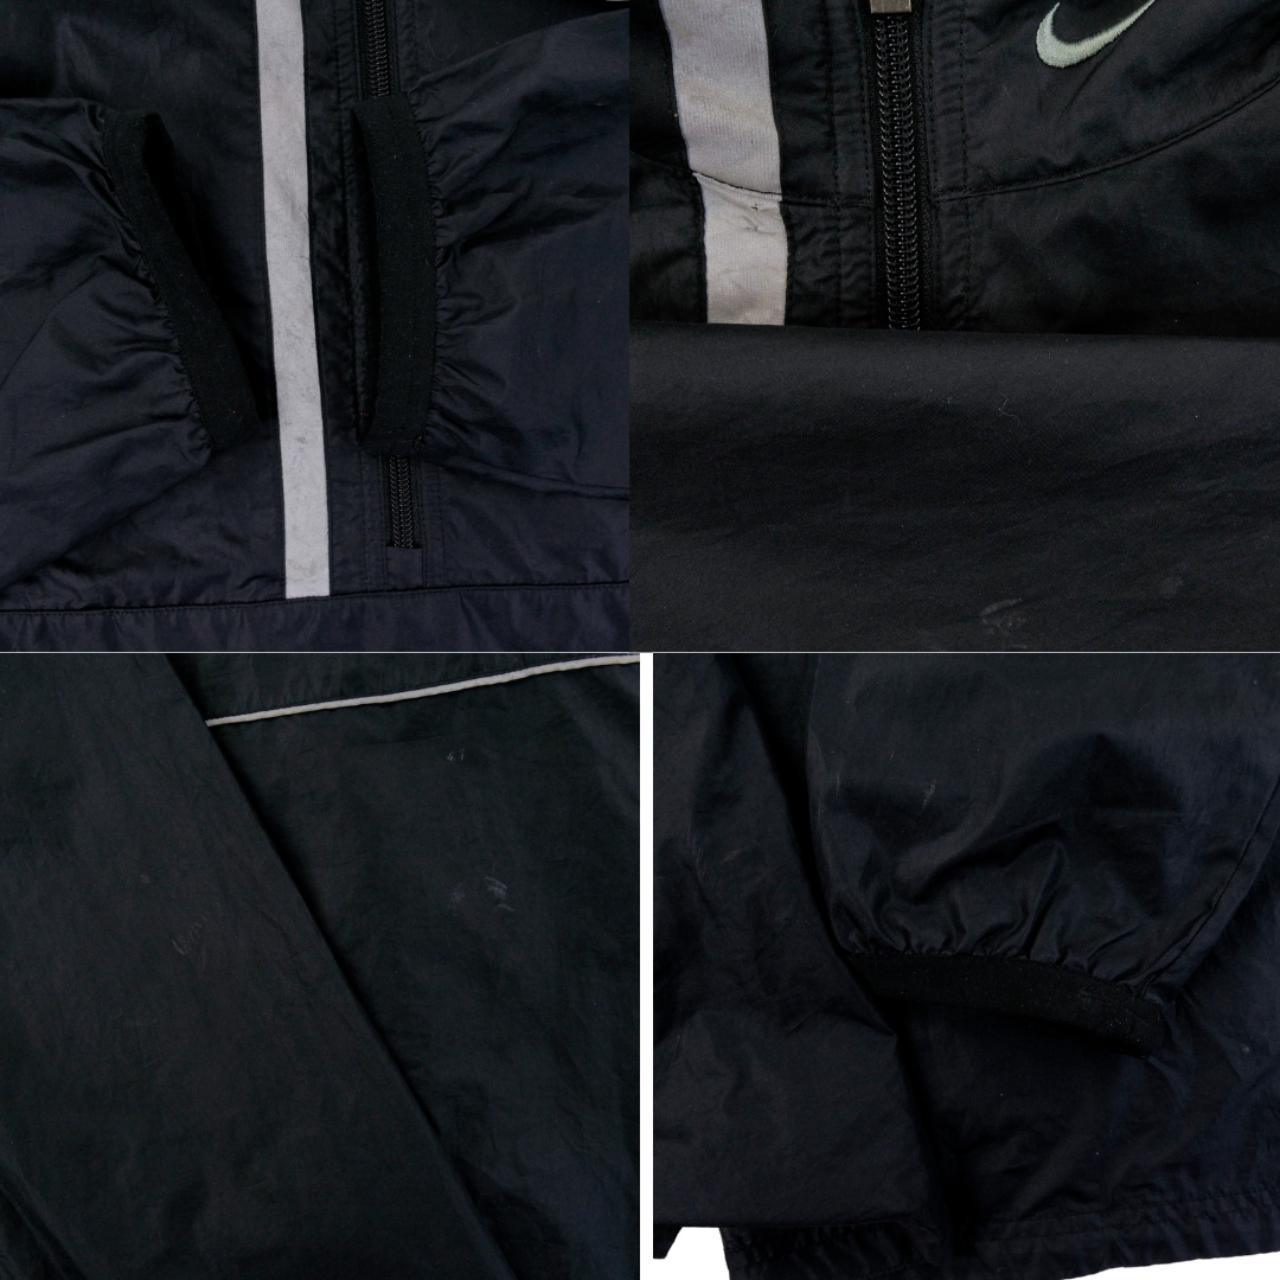 Vintage Nike Asymmetrical Q Zip Jacket Size L - Known Source